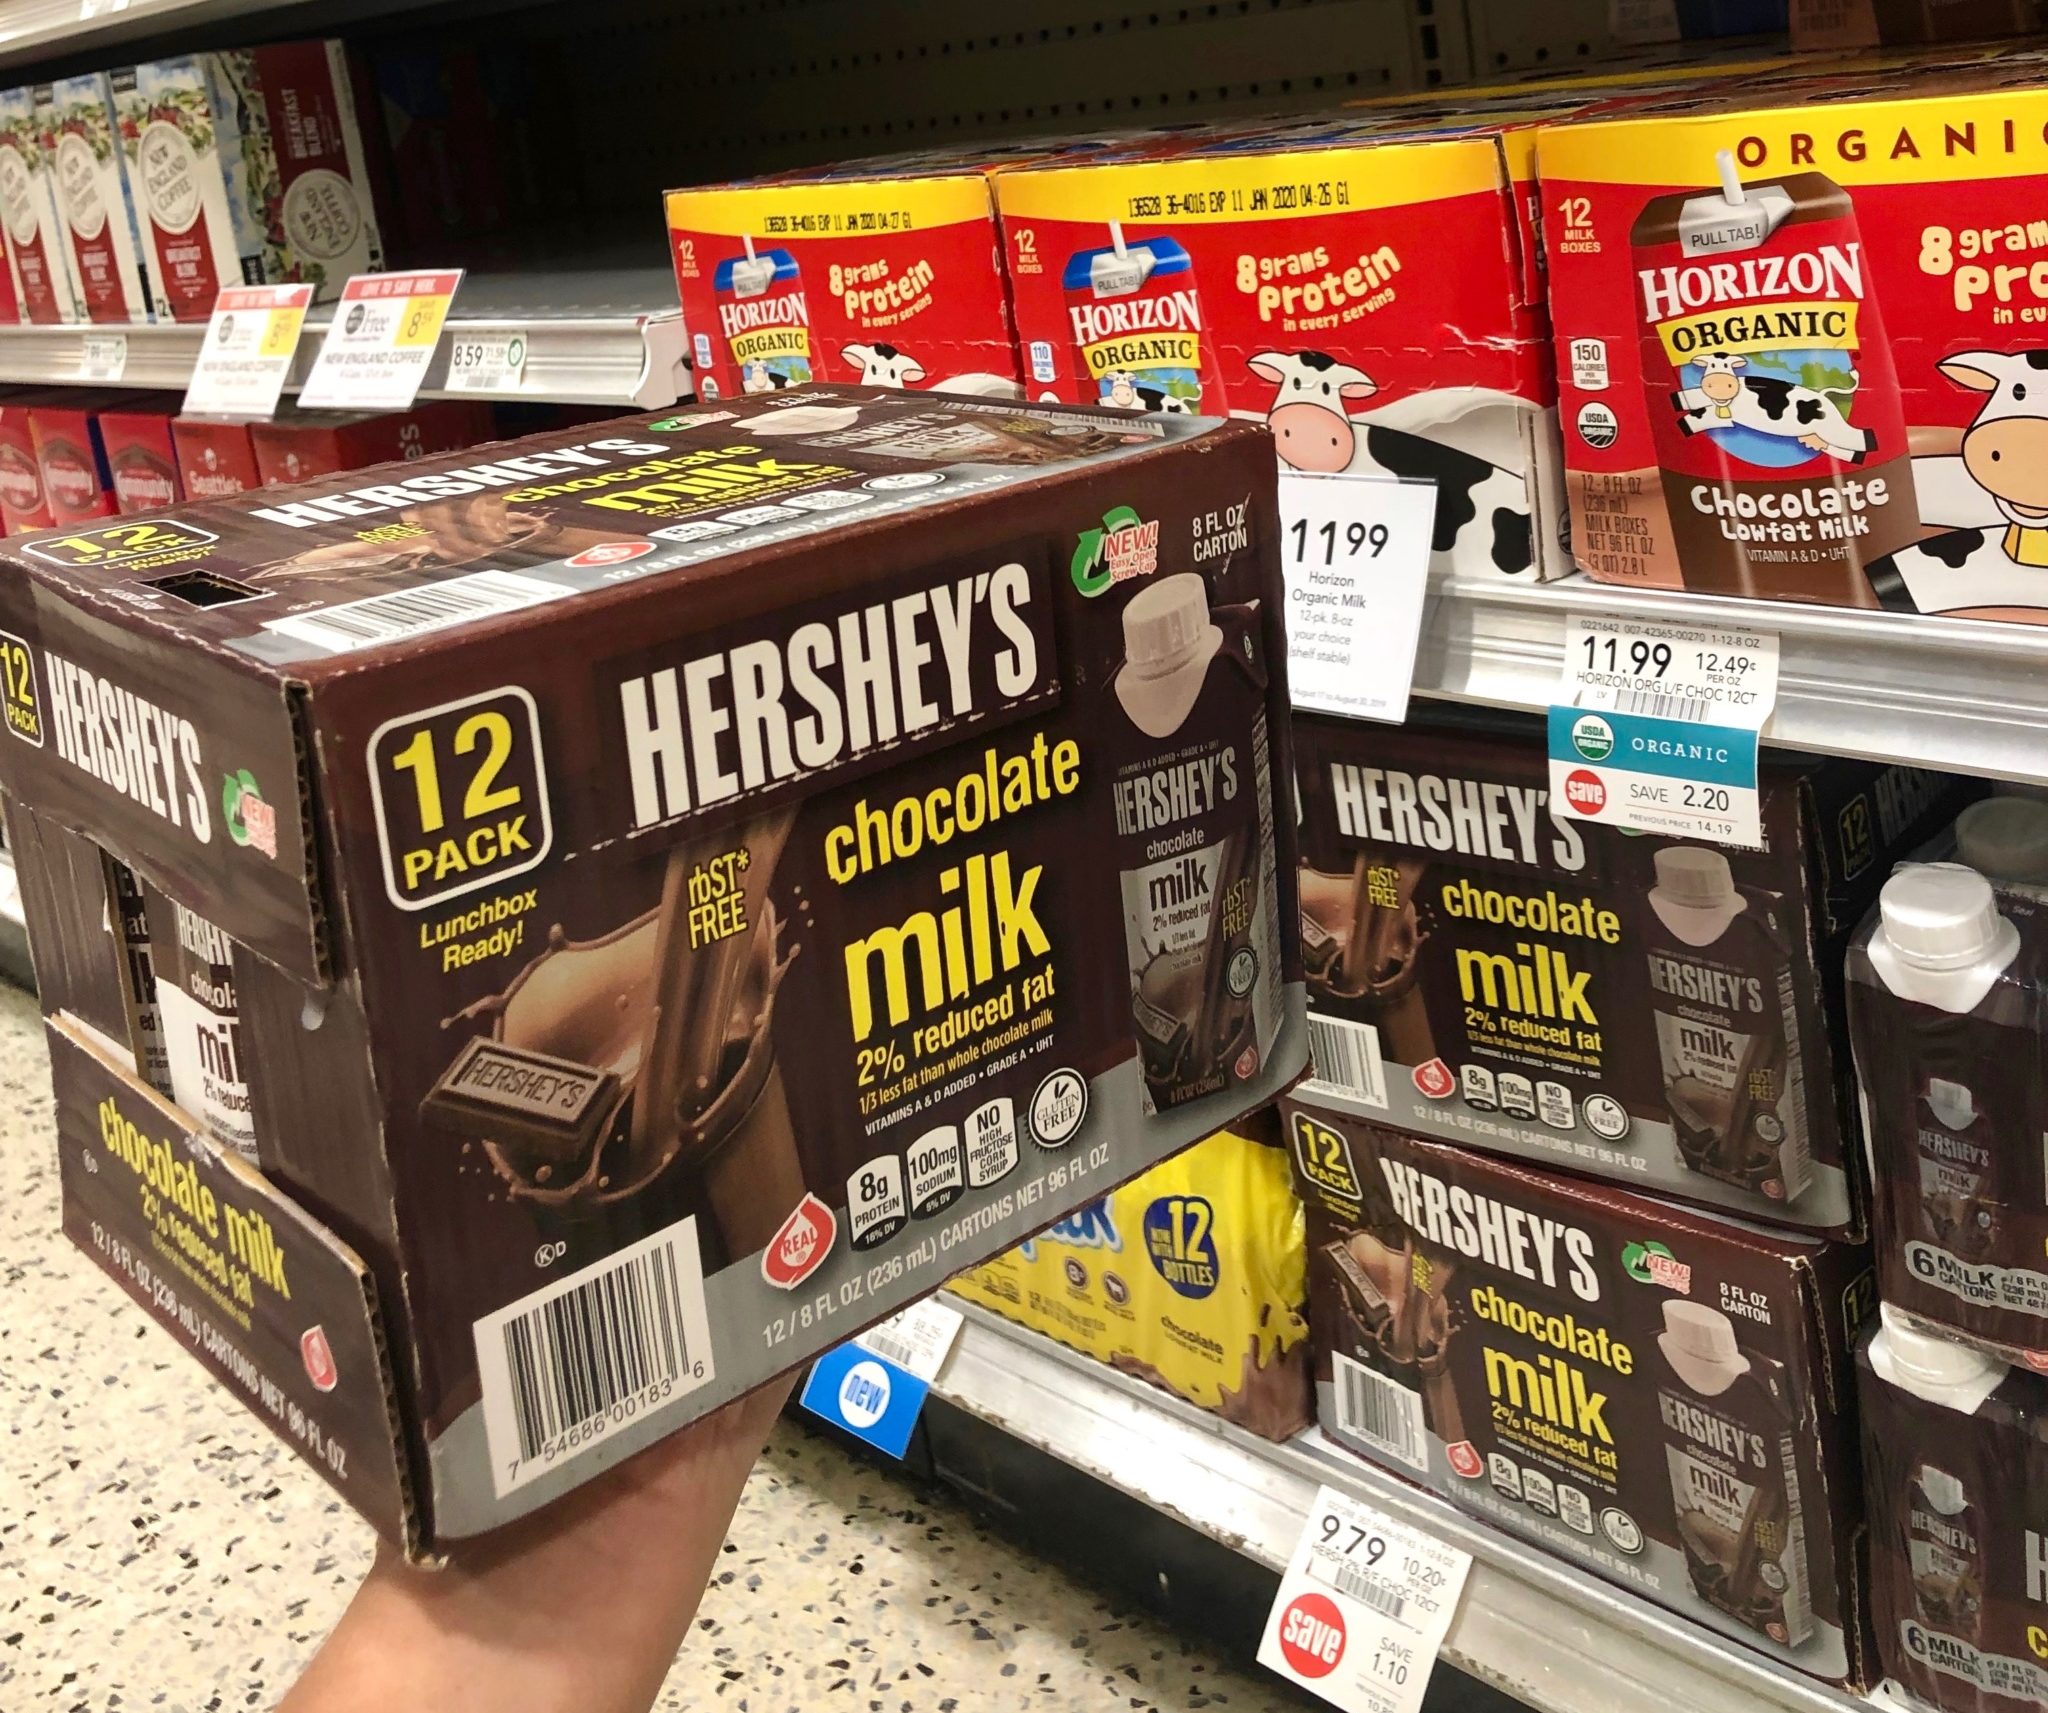 Hershey's shelf stable chocolate milk